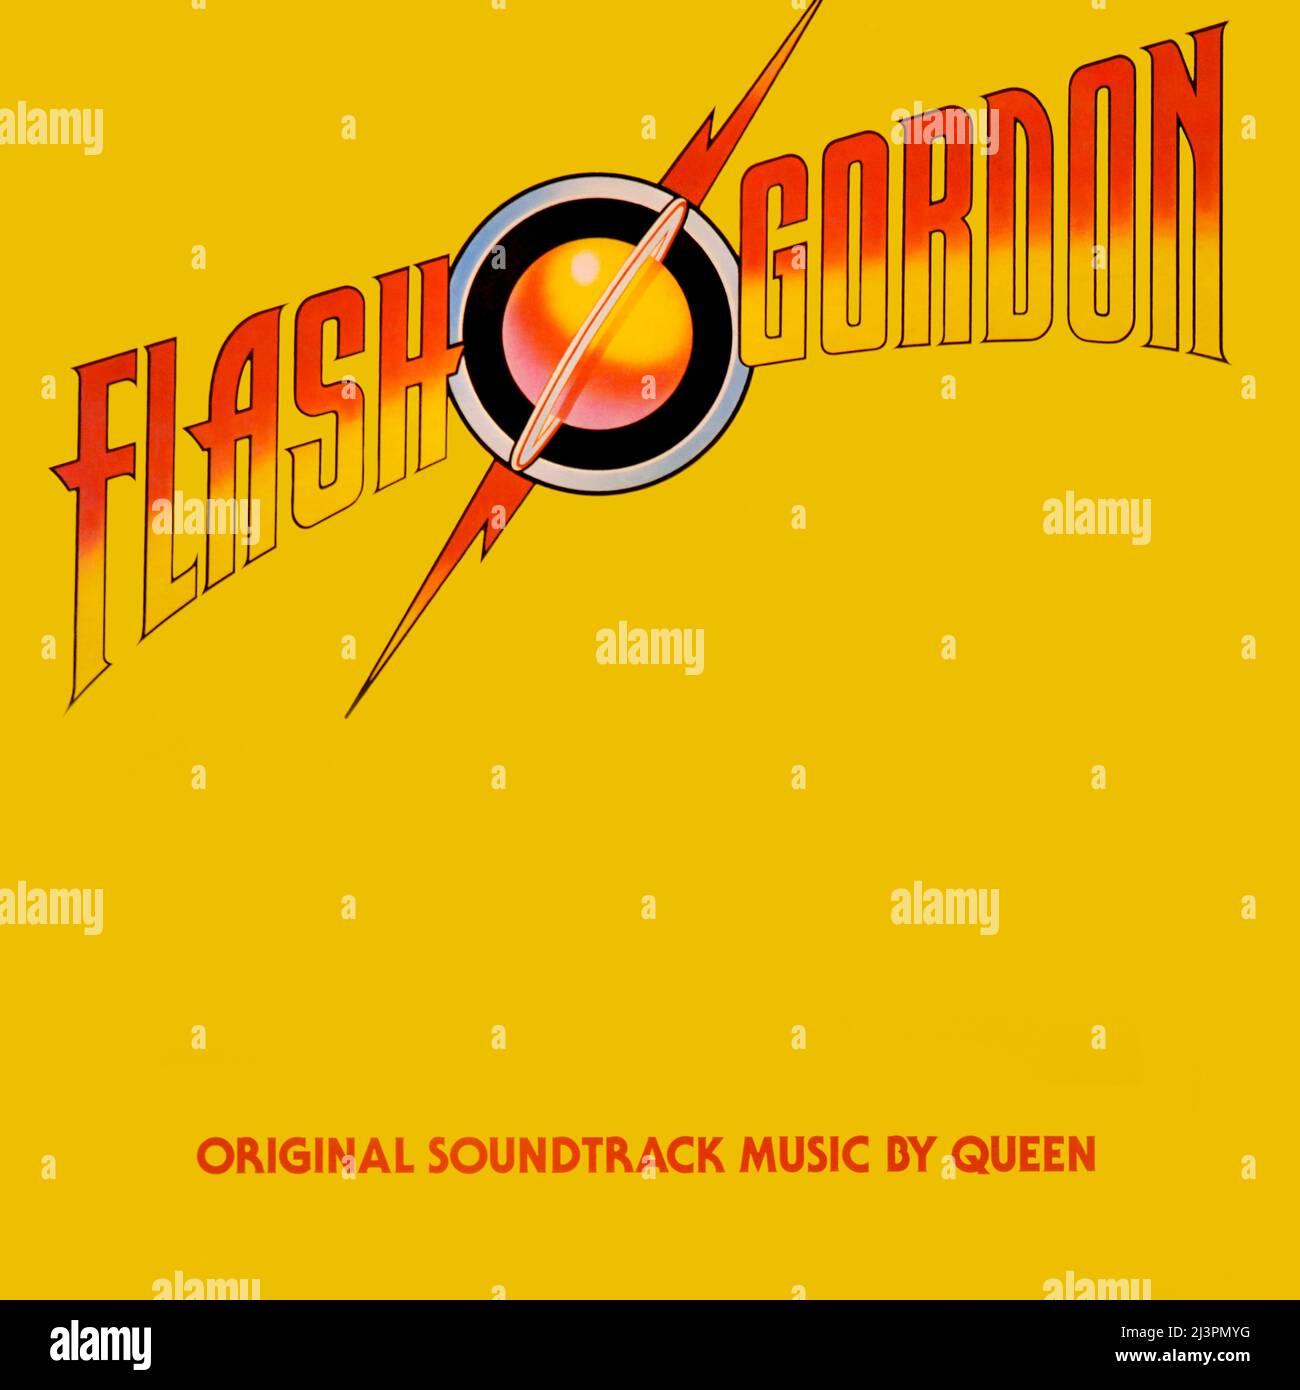 Queen . Original Vinyl Album Cover - Flash Gordon (Original Soundtrack Music) - 1980 Stockfoto